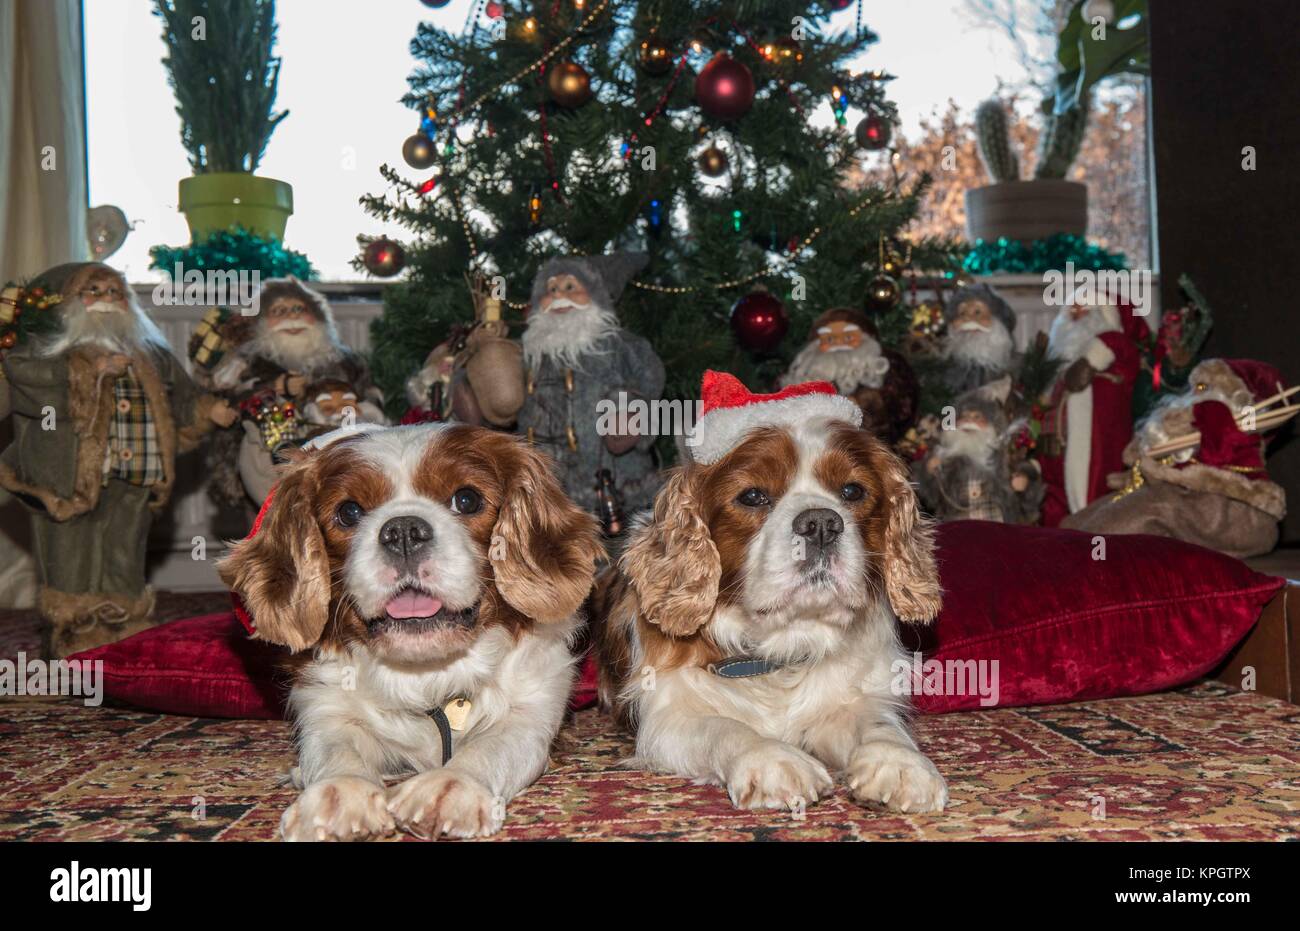 Cavalier King Charles Spaniel hunde Vor einem Weihnachtsbaum mit Hüten und viele Weihnachtsmänner. Stockfoto